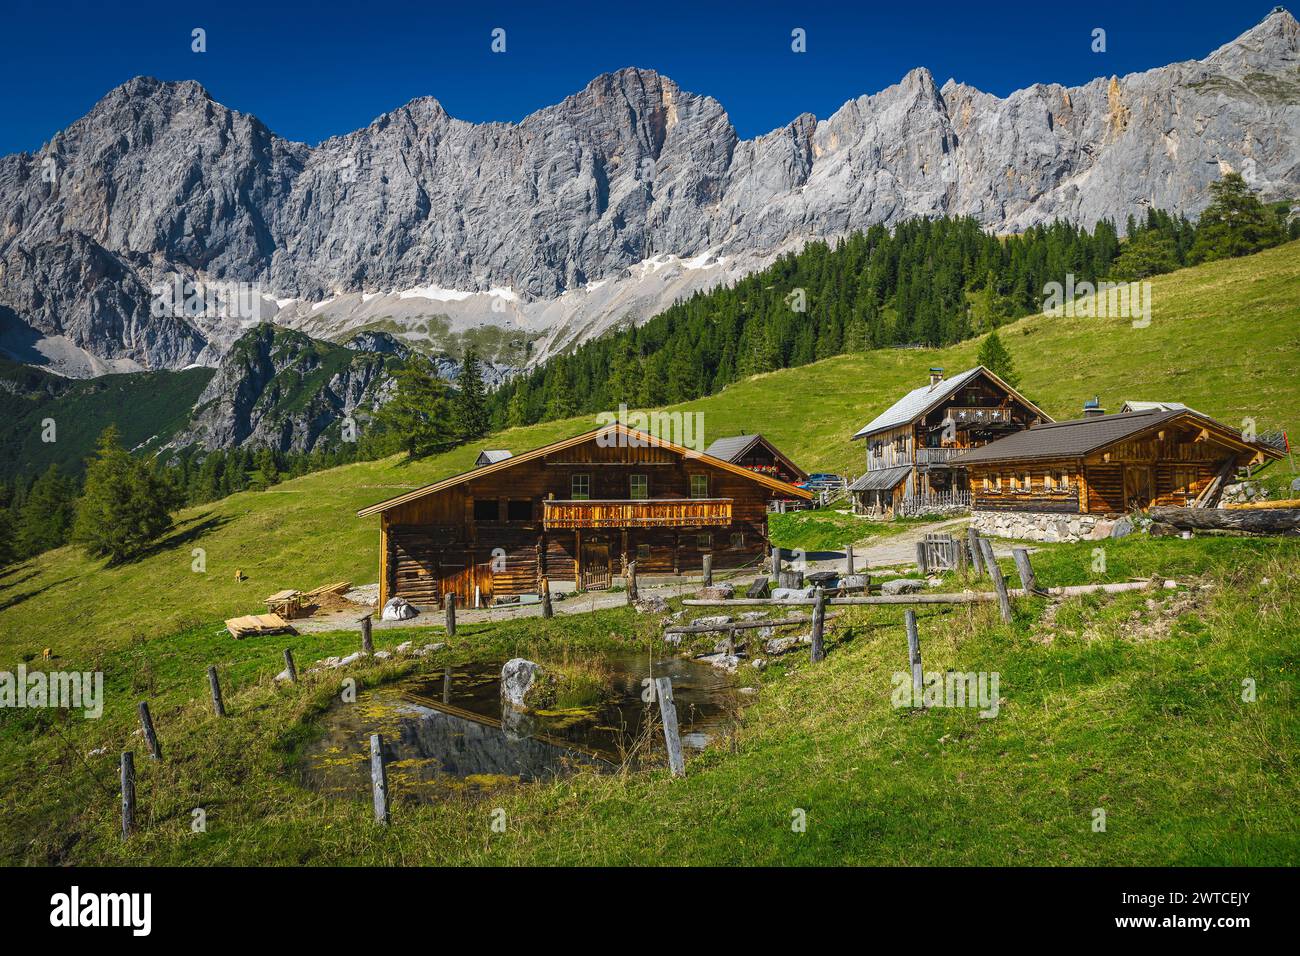 Admirable paisaje alpino, casas de madera en la ladera y pintorescas montañas altas en el fondo, grupo de montaña Dachstein, Ramsau am Dachstein Foto de stock